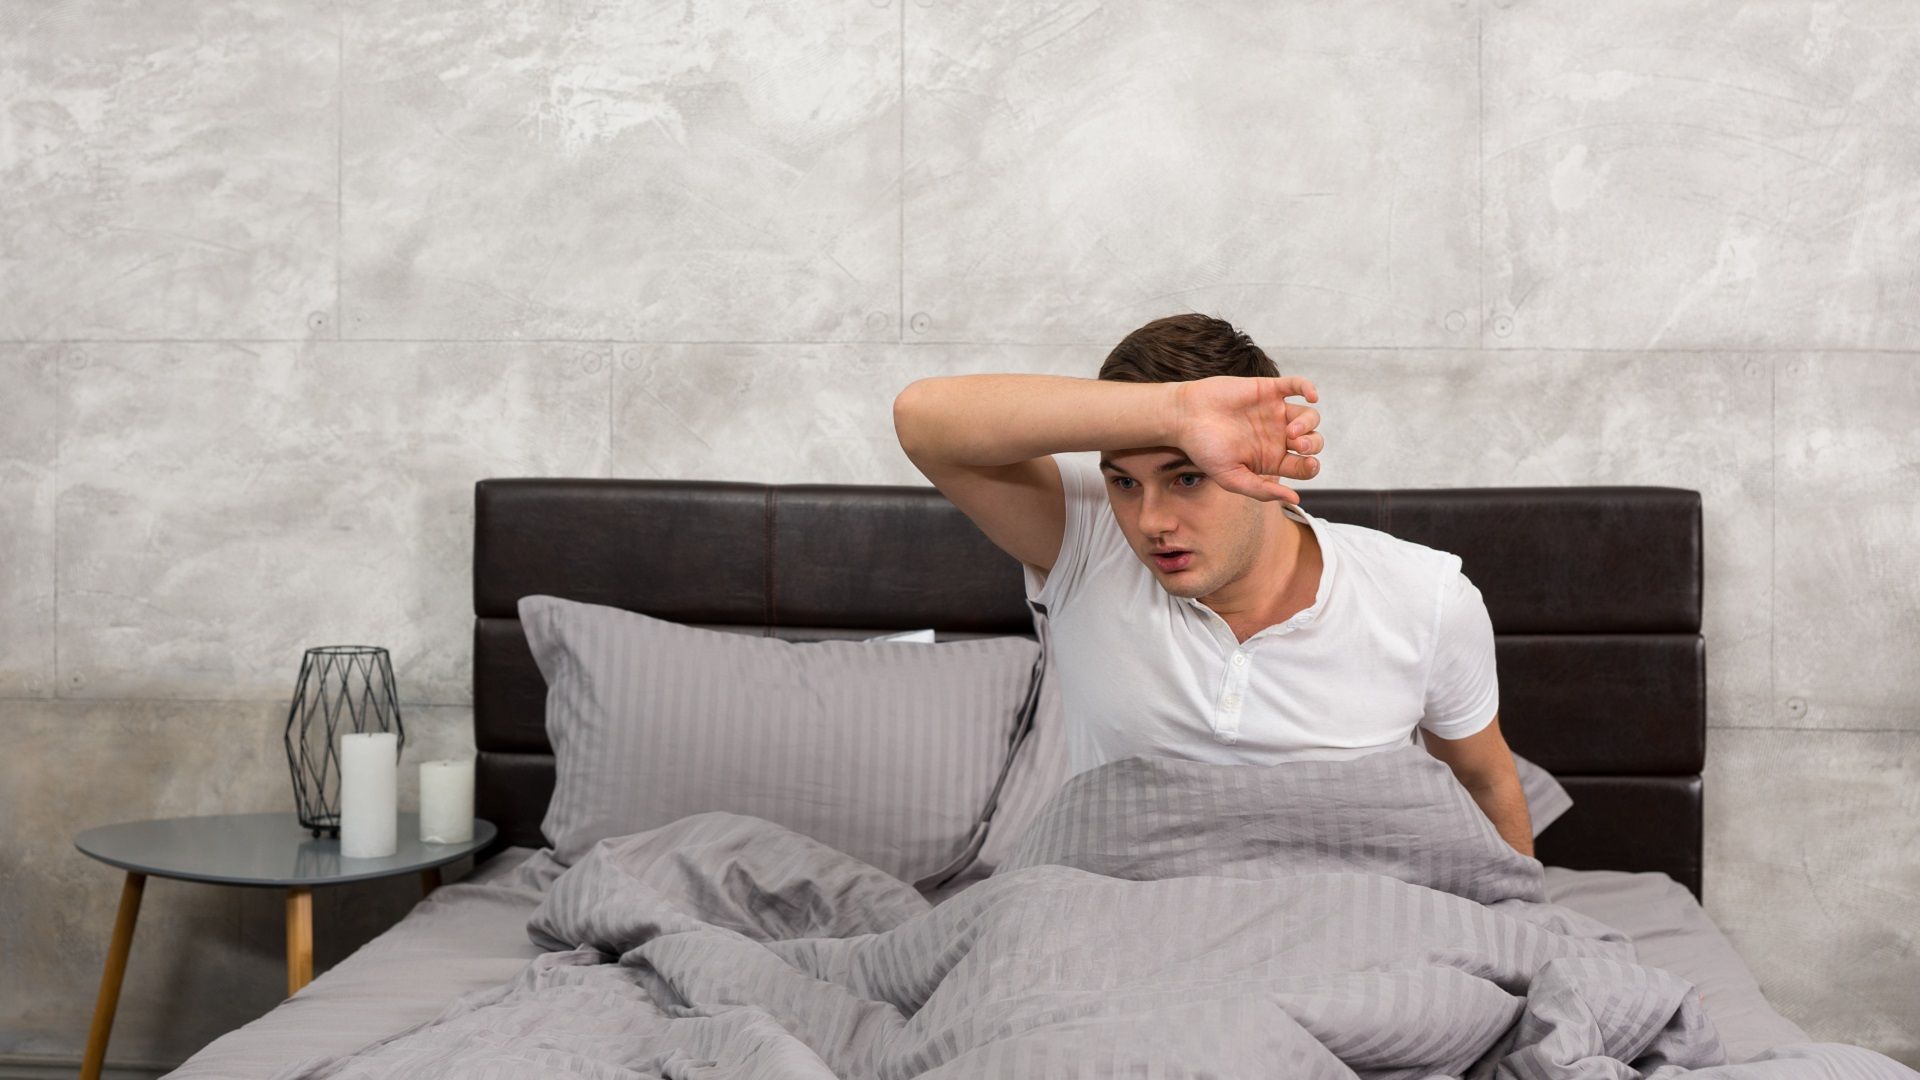 duidelijk Roux dagboek 8 Tips om minder te zweten in bed - Nachtzweten verminderen